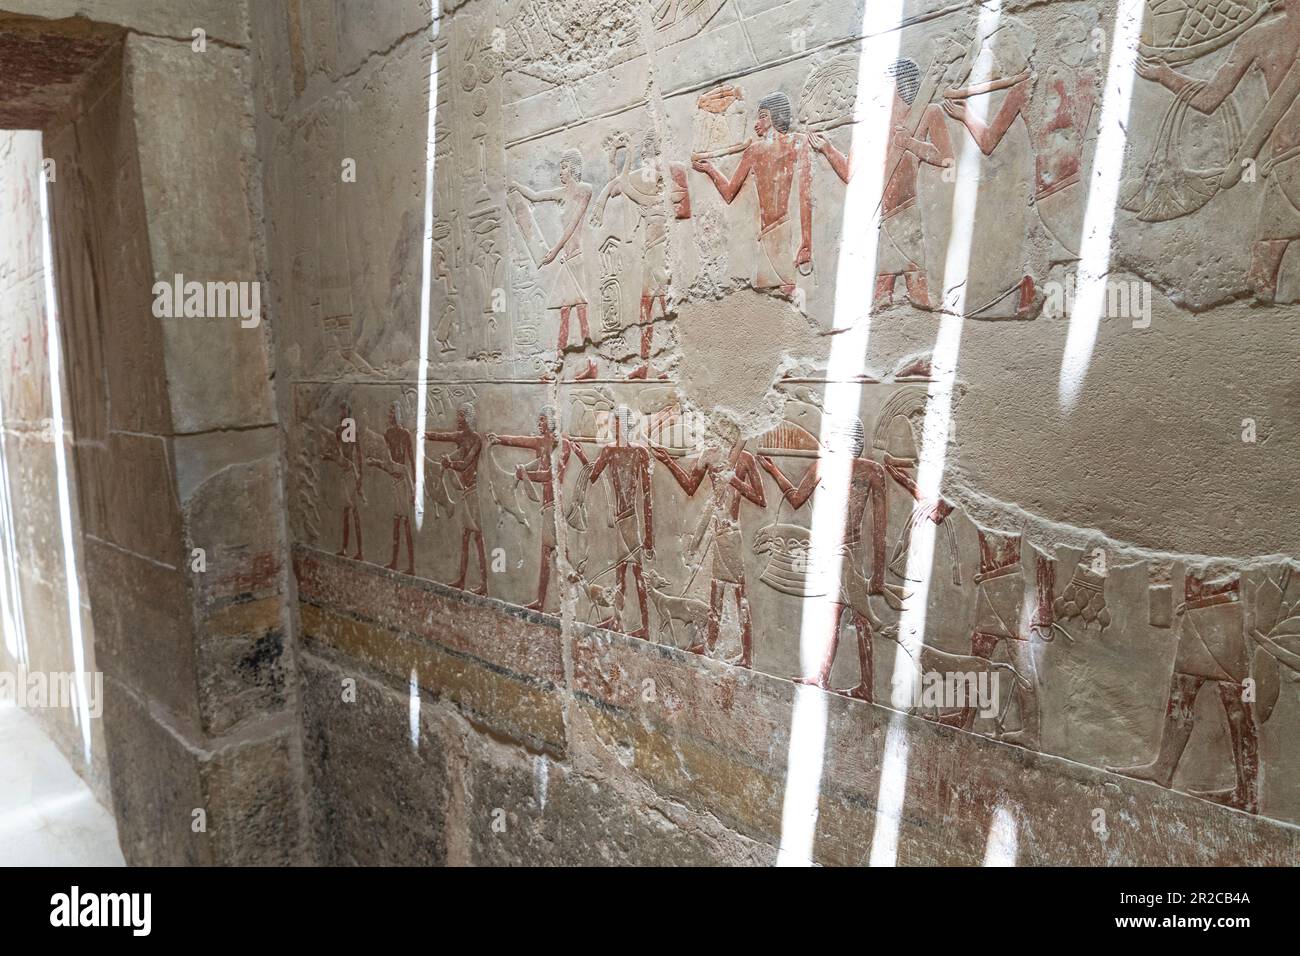 Alte ägyptische Farbbilder an der Wand im Grab. Große Schrittpyramide von Djoser, Sakkara. Kairo, Ägypten. Das Grab der Pharaonen. Altes ägyptisches Schreiben Stockfoto